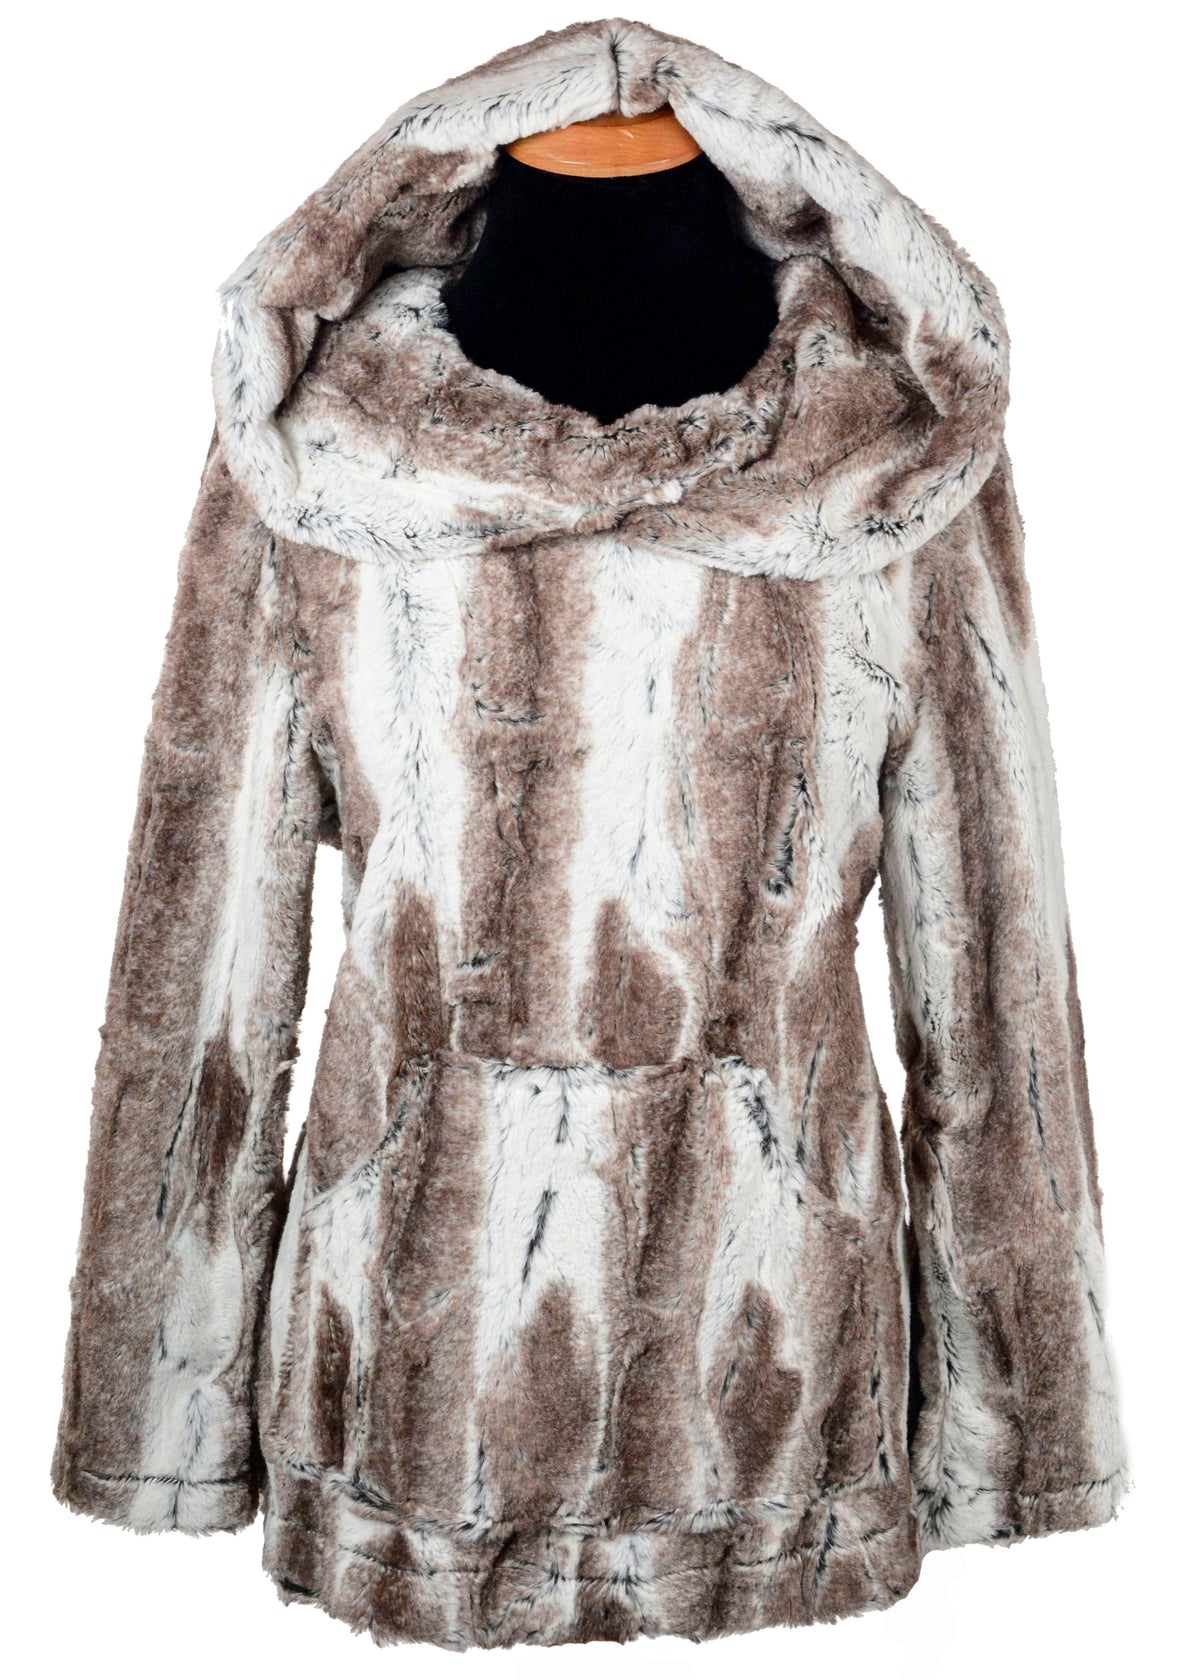 Hooded Lounger - Luxury Faux Fur in Birch handmade in Seattle WA by Pandemonium Millinery.